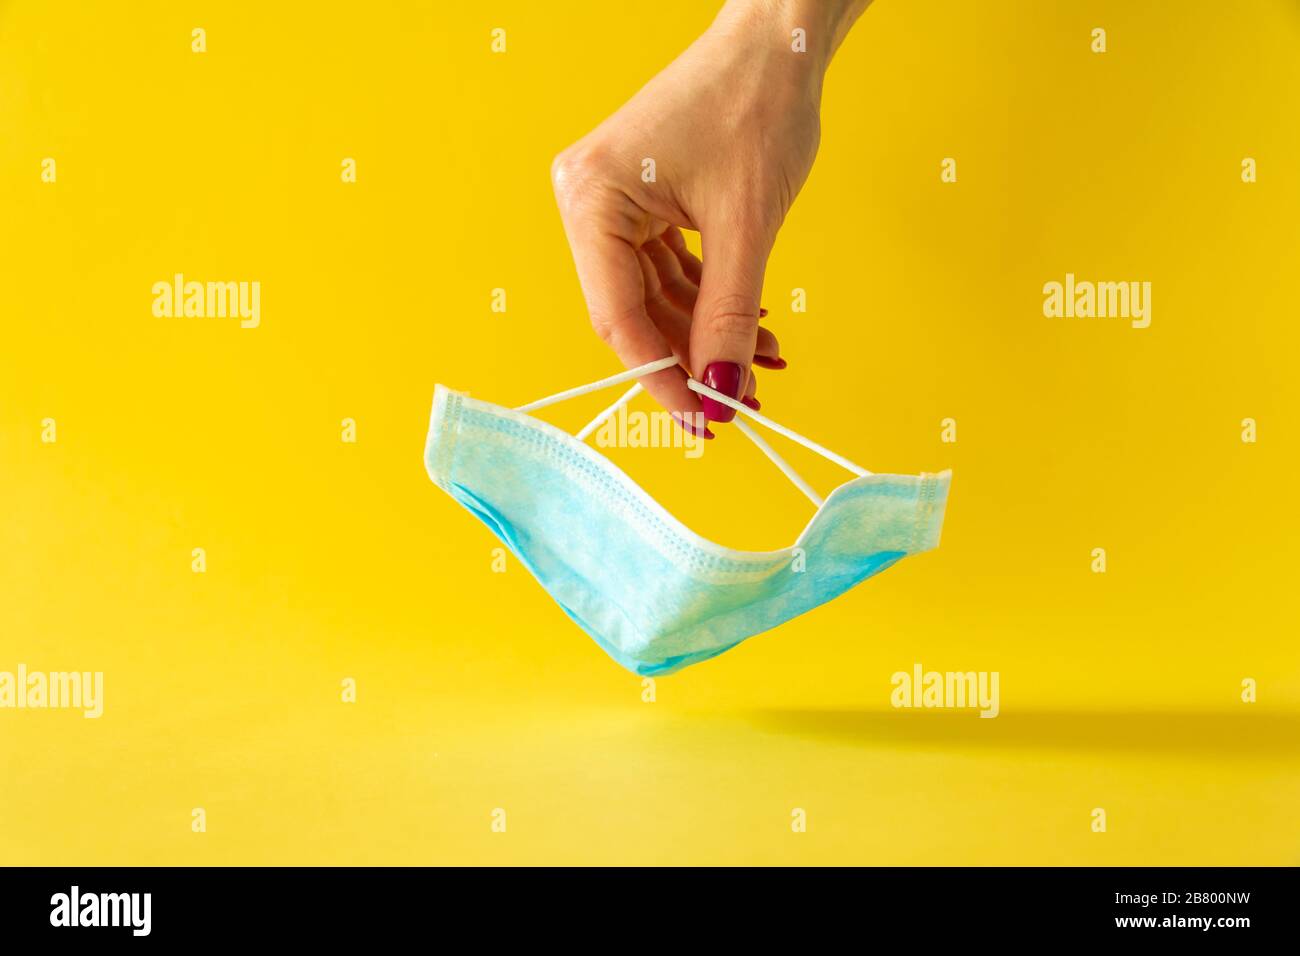 Verfahrensmaske. Operationsmaske mit Gummi-Ohrbändern auf gelbem Hintergrund mit Frauenhand. Stockfoto